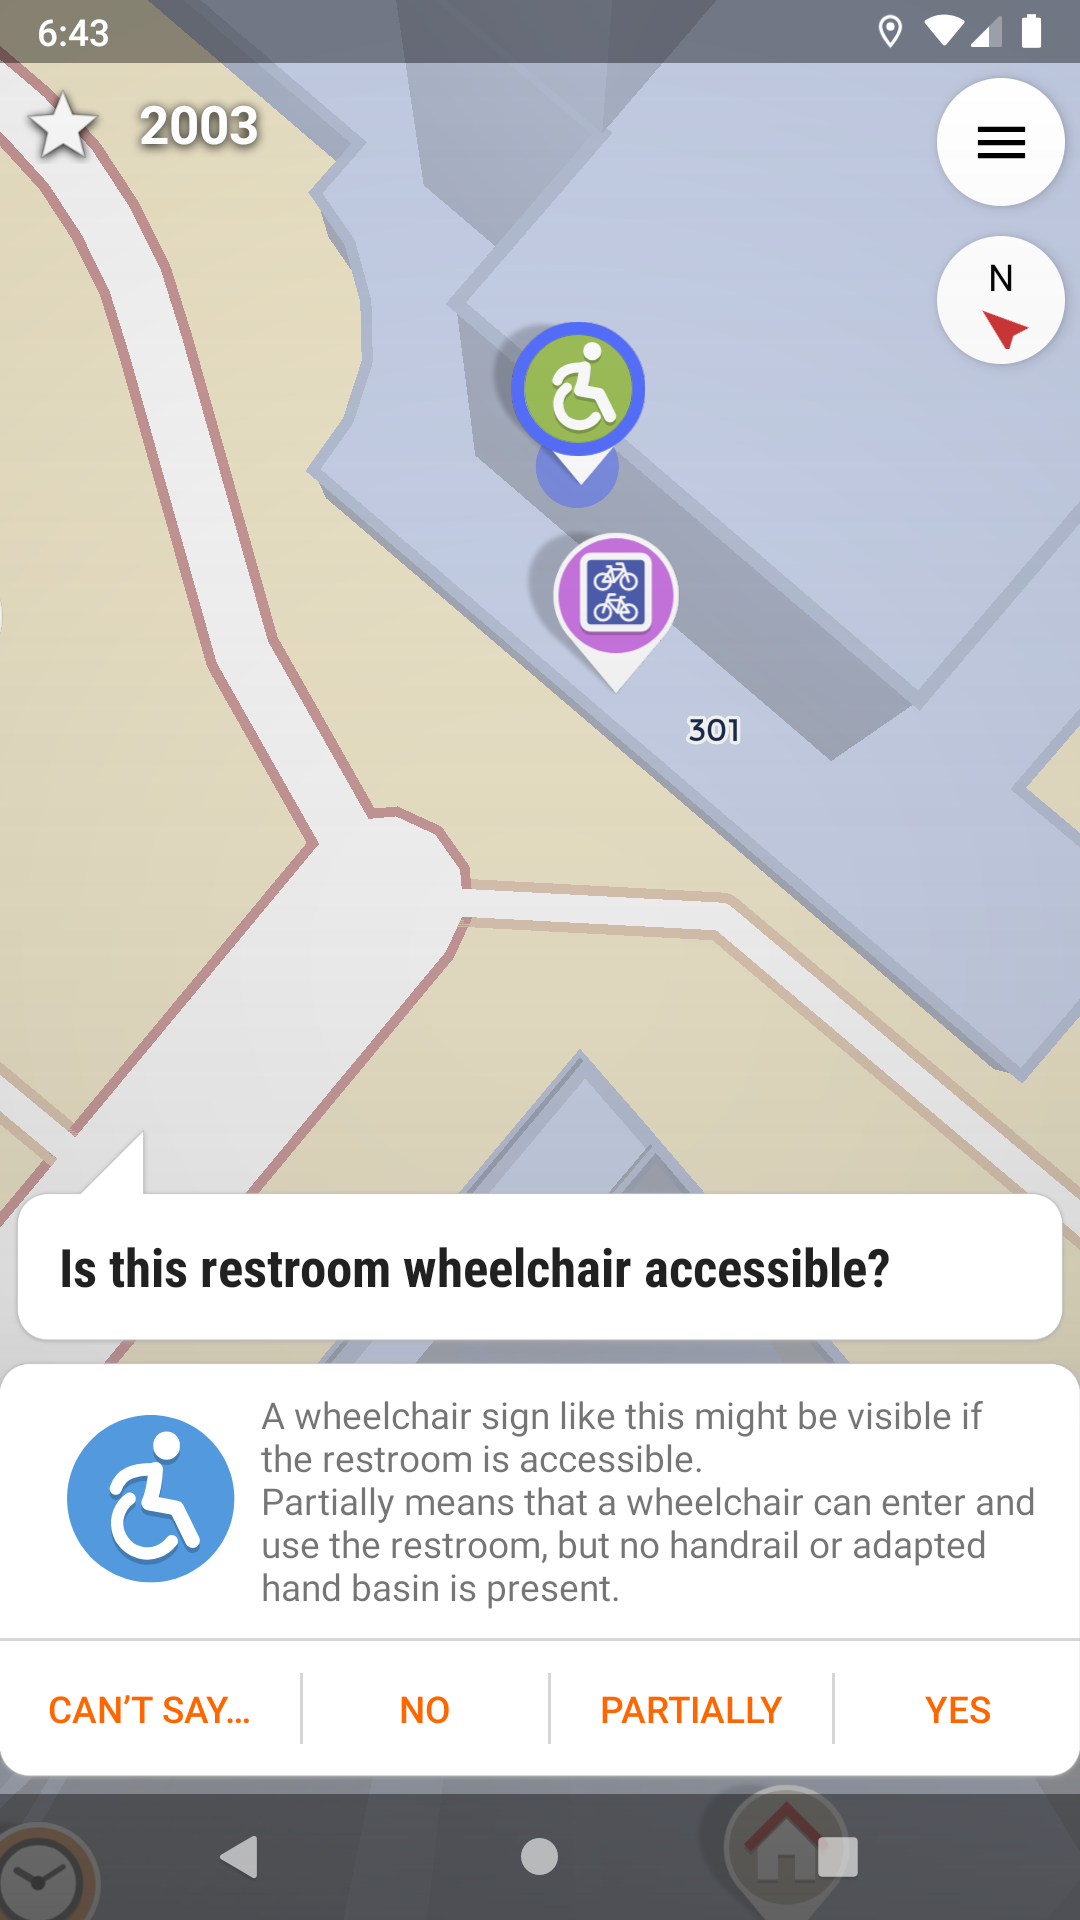 StreetComplete propose à l'utilisateur d'indiquer si des toilettes publiques sont accessibles en fauteuil roulant. Quatre choix simples sont proposés : ne sait pas, non, partiellement, oui